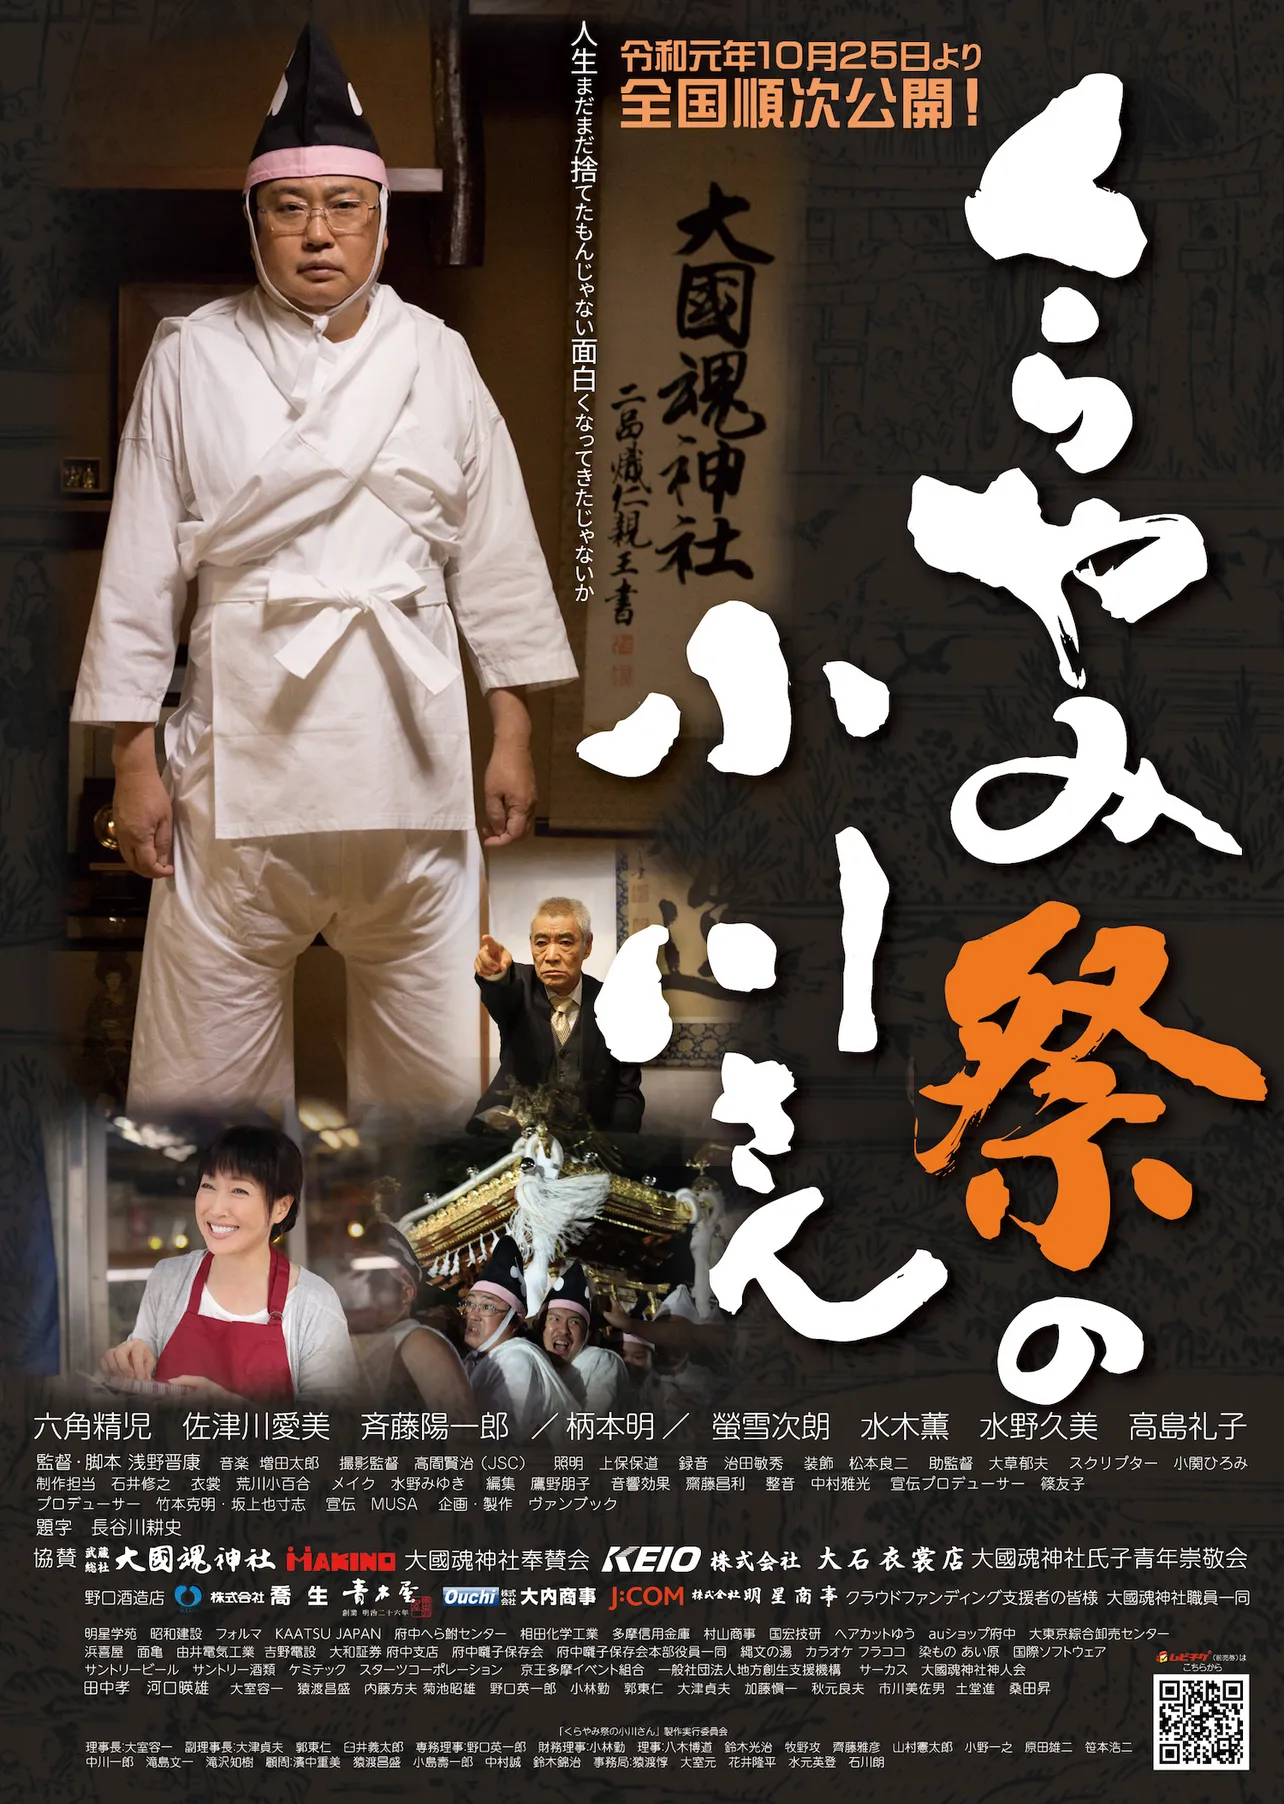 府中が町をあげて初の映画製作に乗り出した、六角精児主演の「くらやみ祭の小川さん」が10月25日(金)に公開